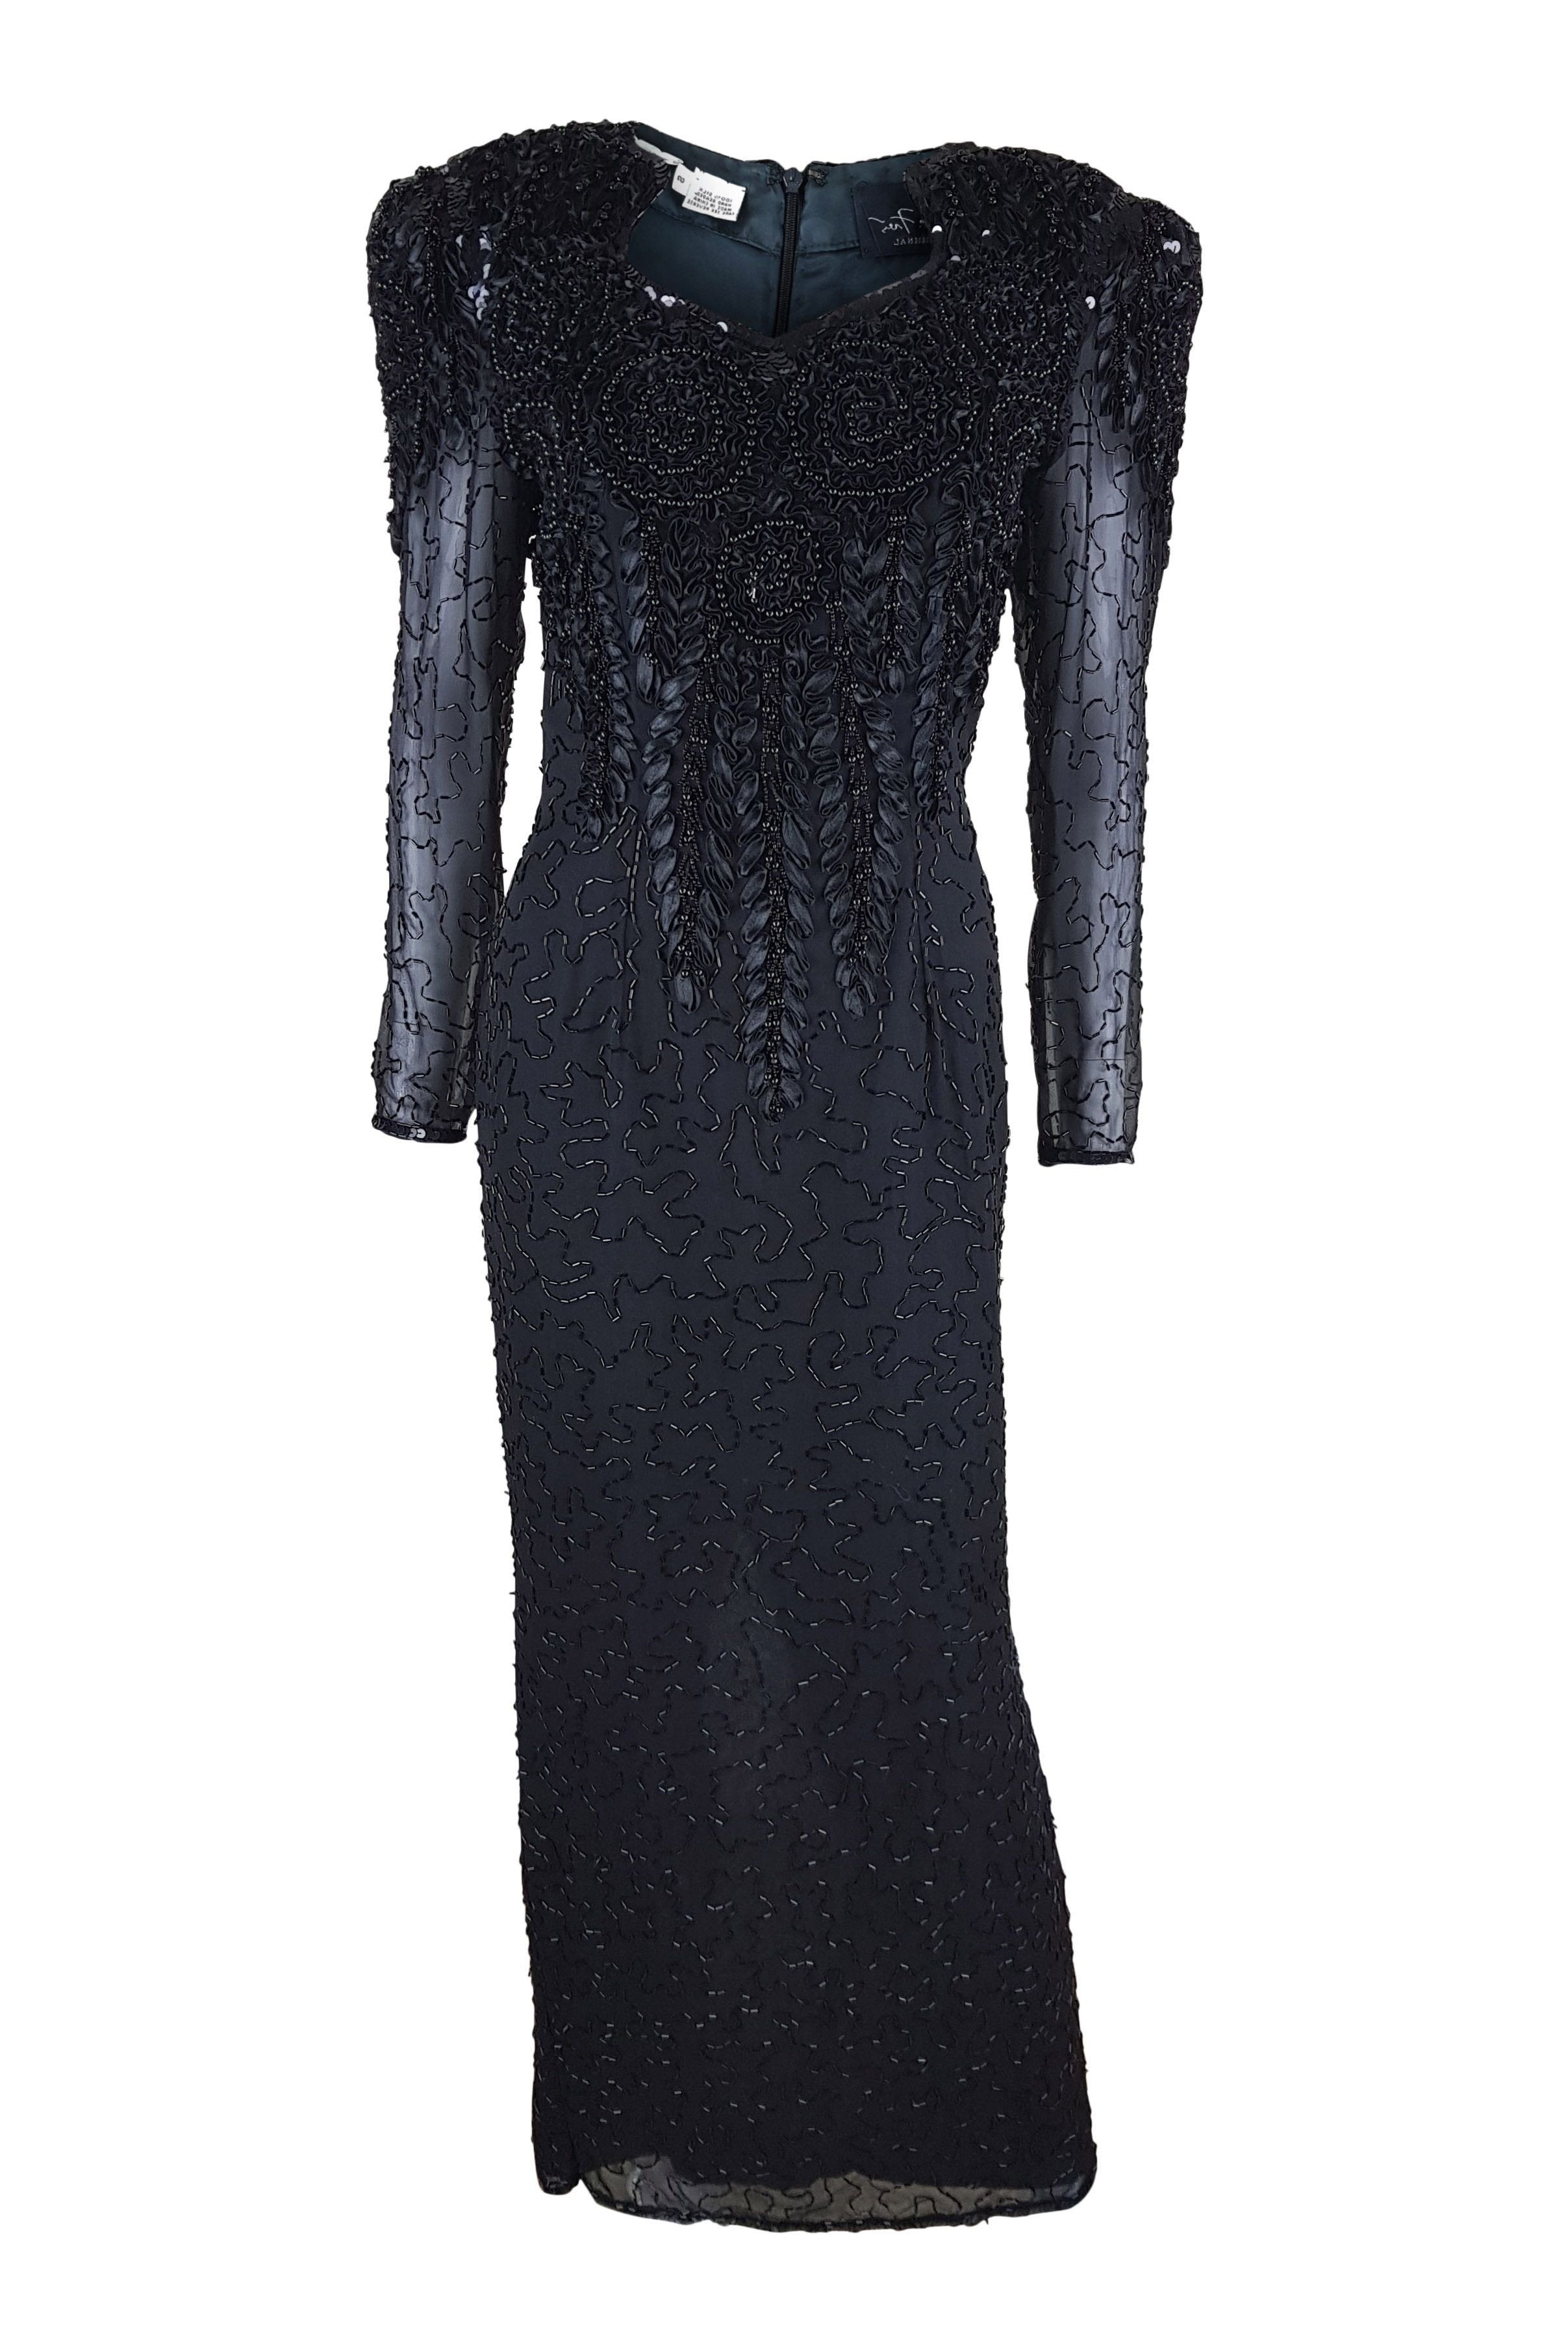 DIANE FREIS Vintage Beaded Black Cocktail Dress (S)-Diane Freis-The Freperie